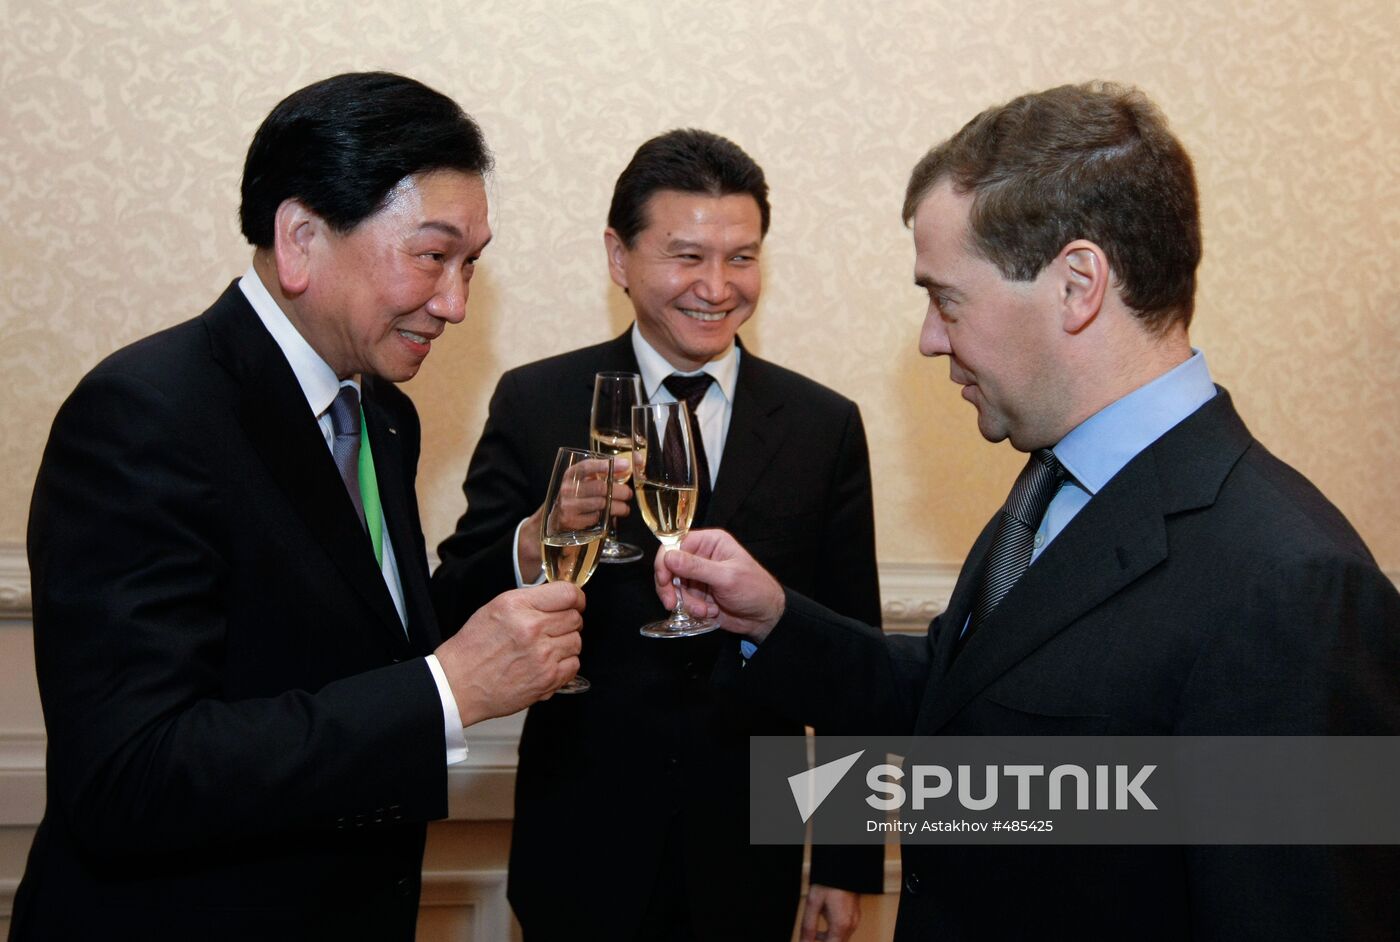 Dmitry Medvedev pays working visit to Volga Federal District